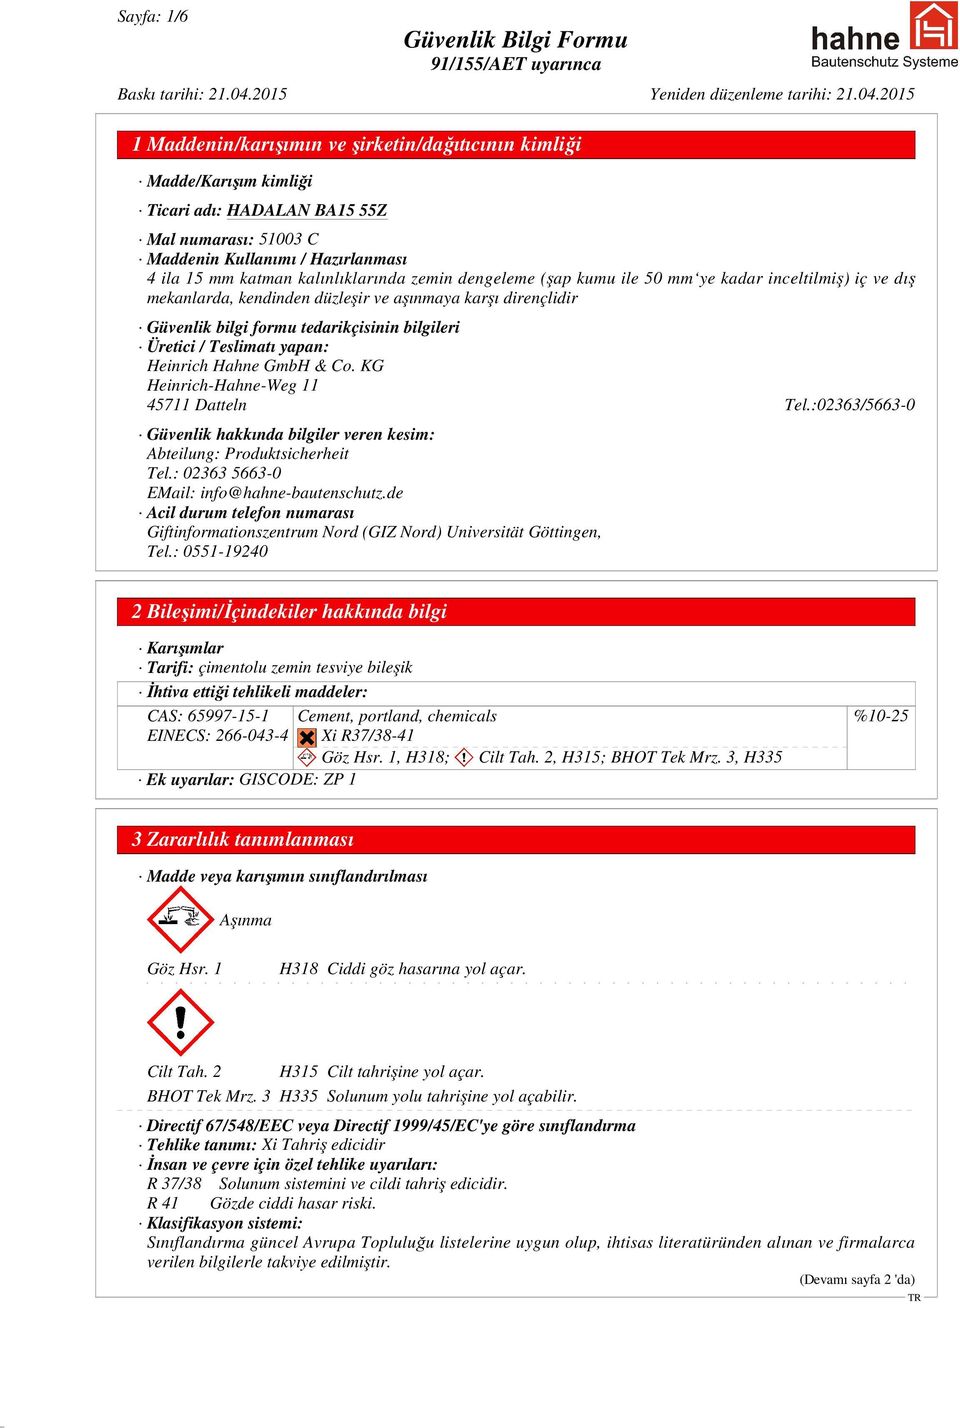 GmbH & Co. KG Heinrich-Hahne-Weg 11 45711 Datteln Tel.:02363/5663-0 Güvenlik hakkında bilgiler veren kesim: Abteilung: Produktsicherheit Tel.: 02363 5663-0 EMail: info@hahne-bautenschutz.